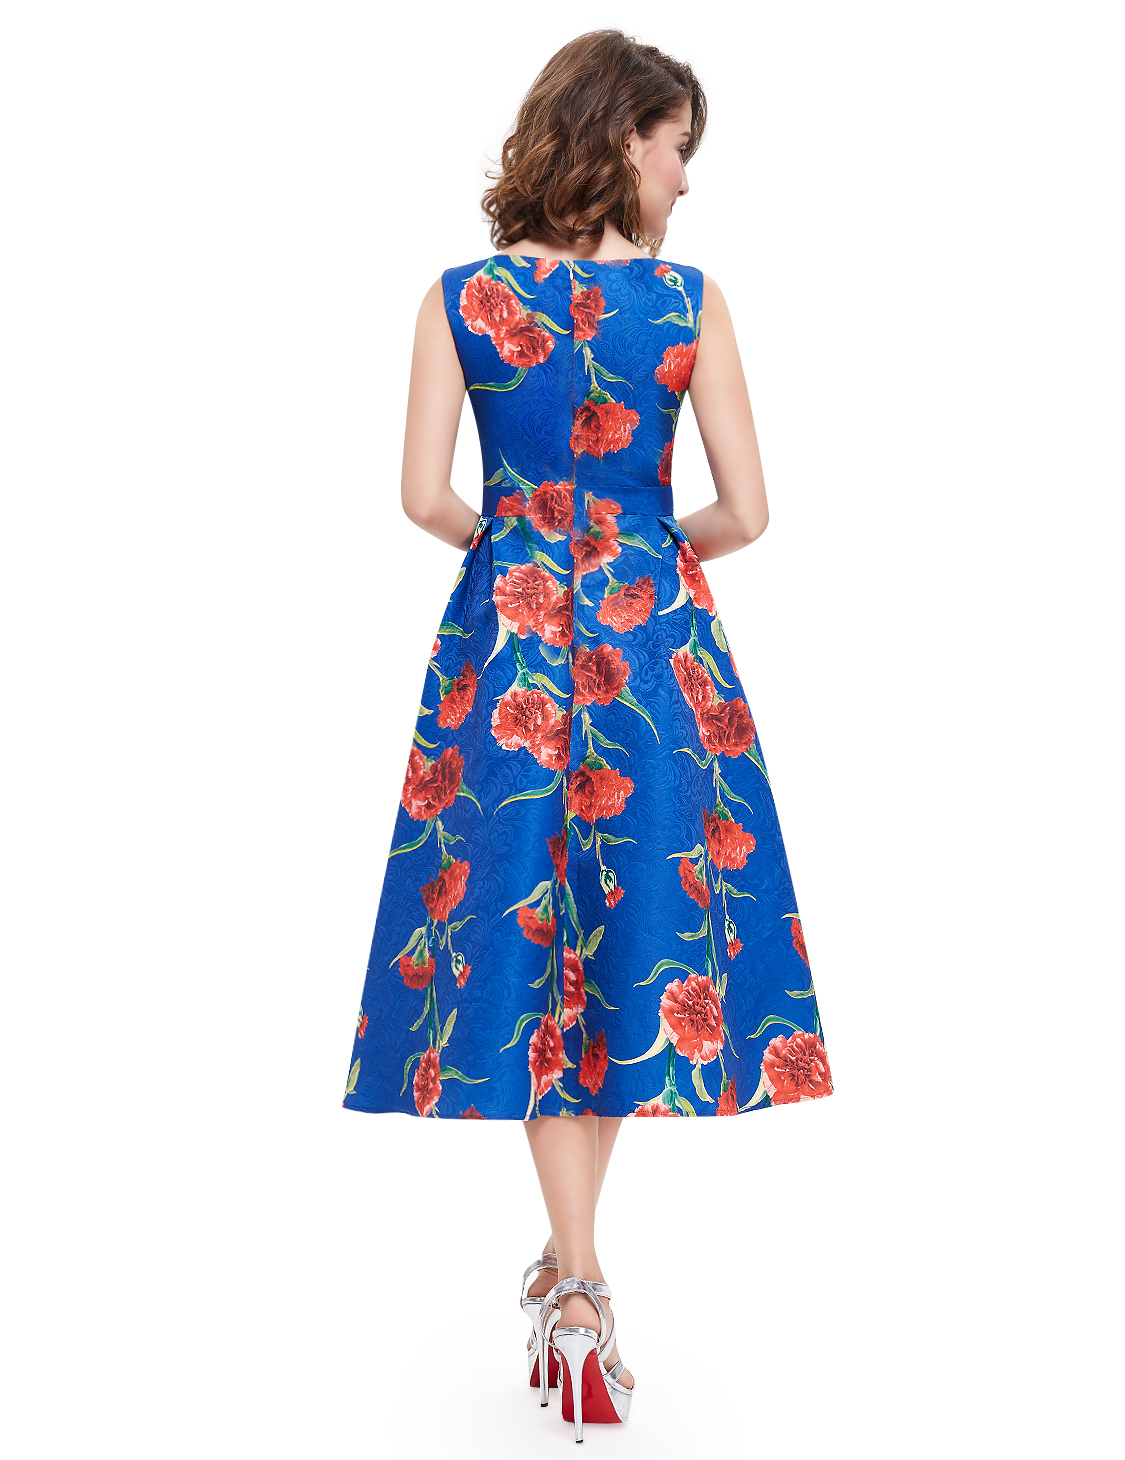 Dámské šaty ALINE s květy modrá